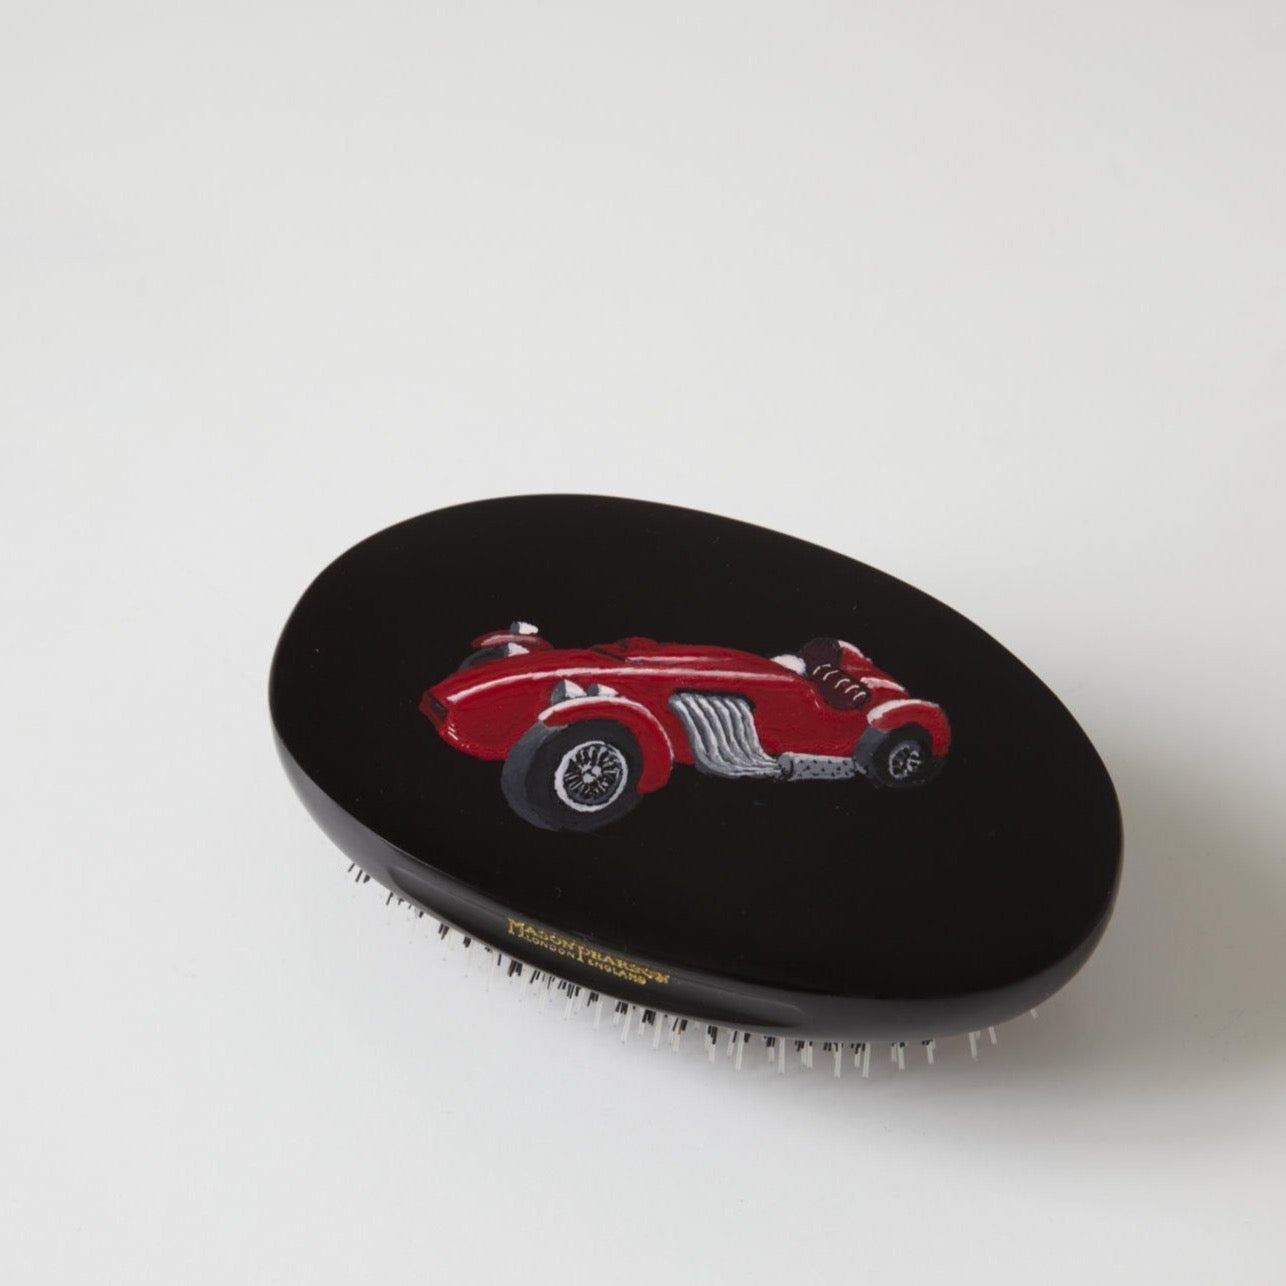 British Racer Hairbrush - Red Racing Car